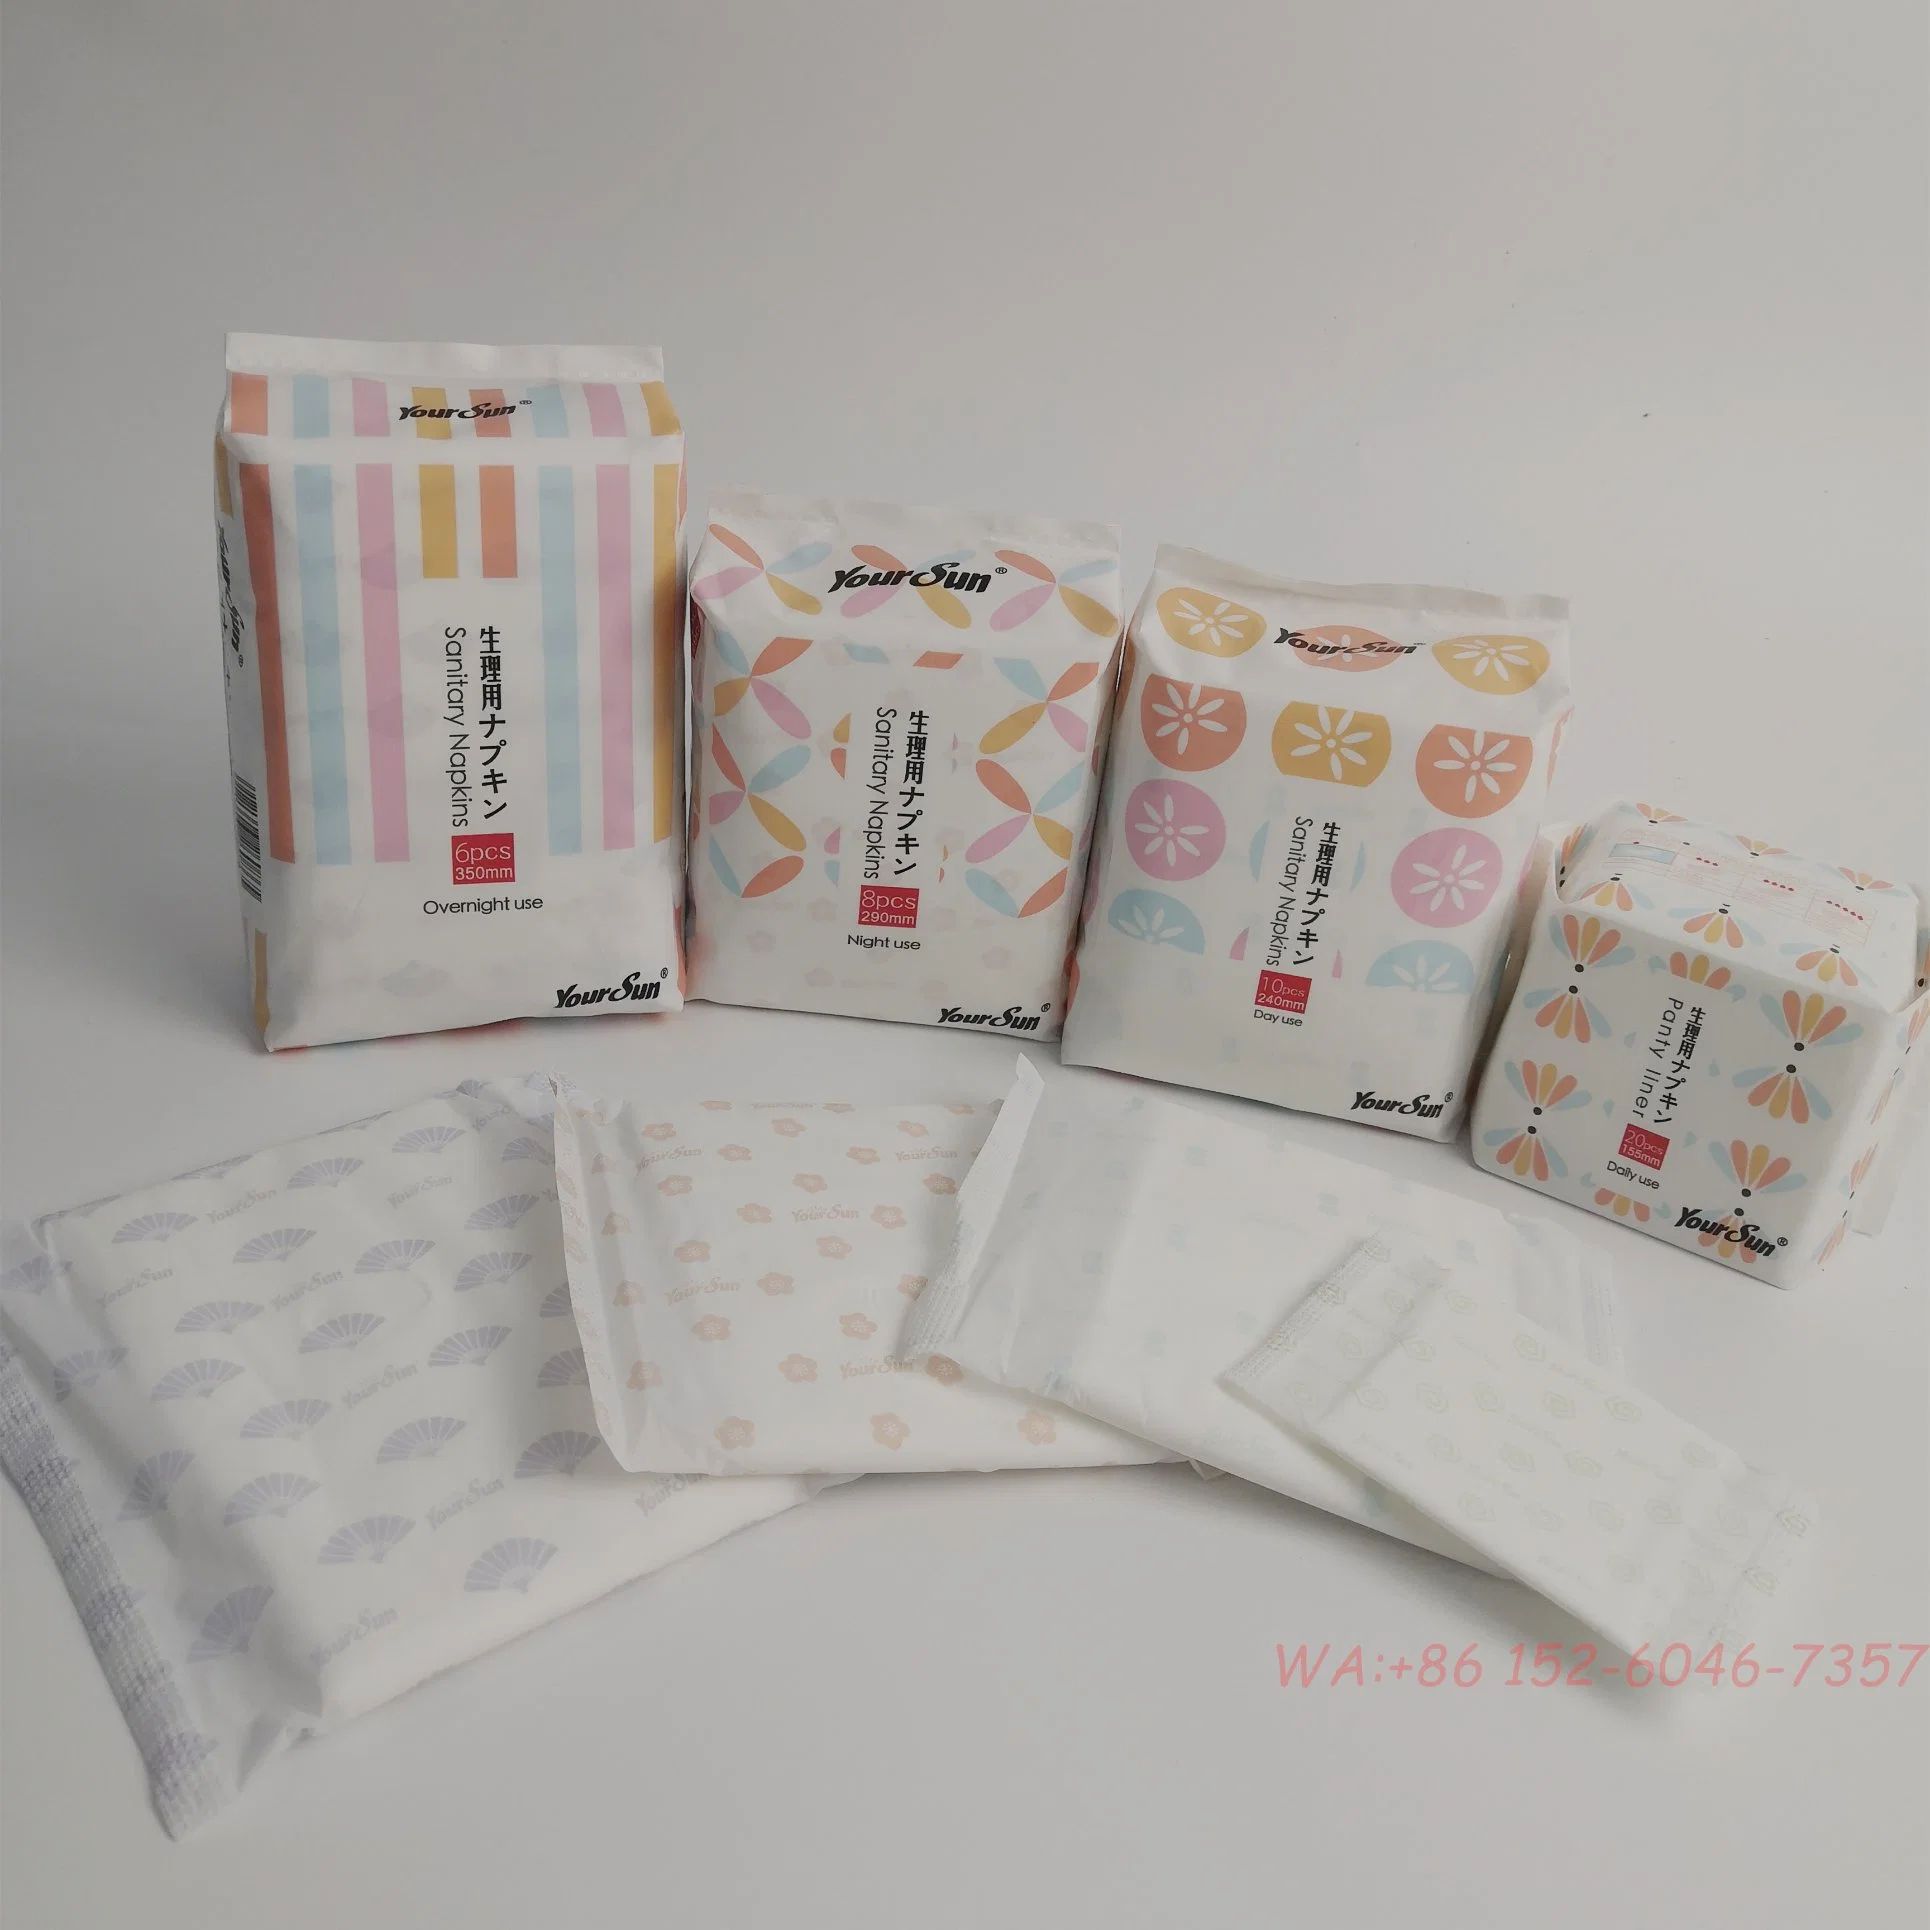 Almohadillas Premium de calidad japonesa ultra delgadas para mujeres Uso diario nocturno durante la menstruación